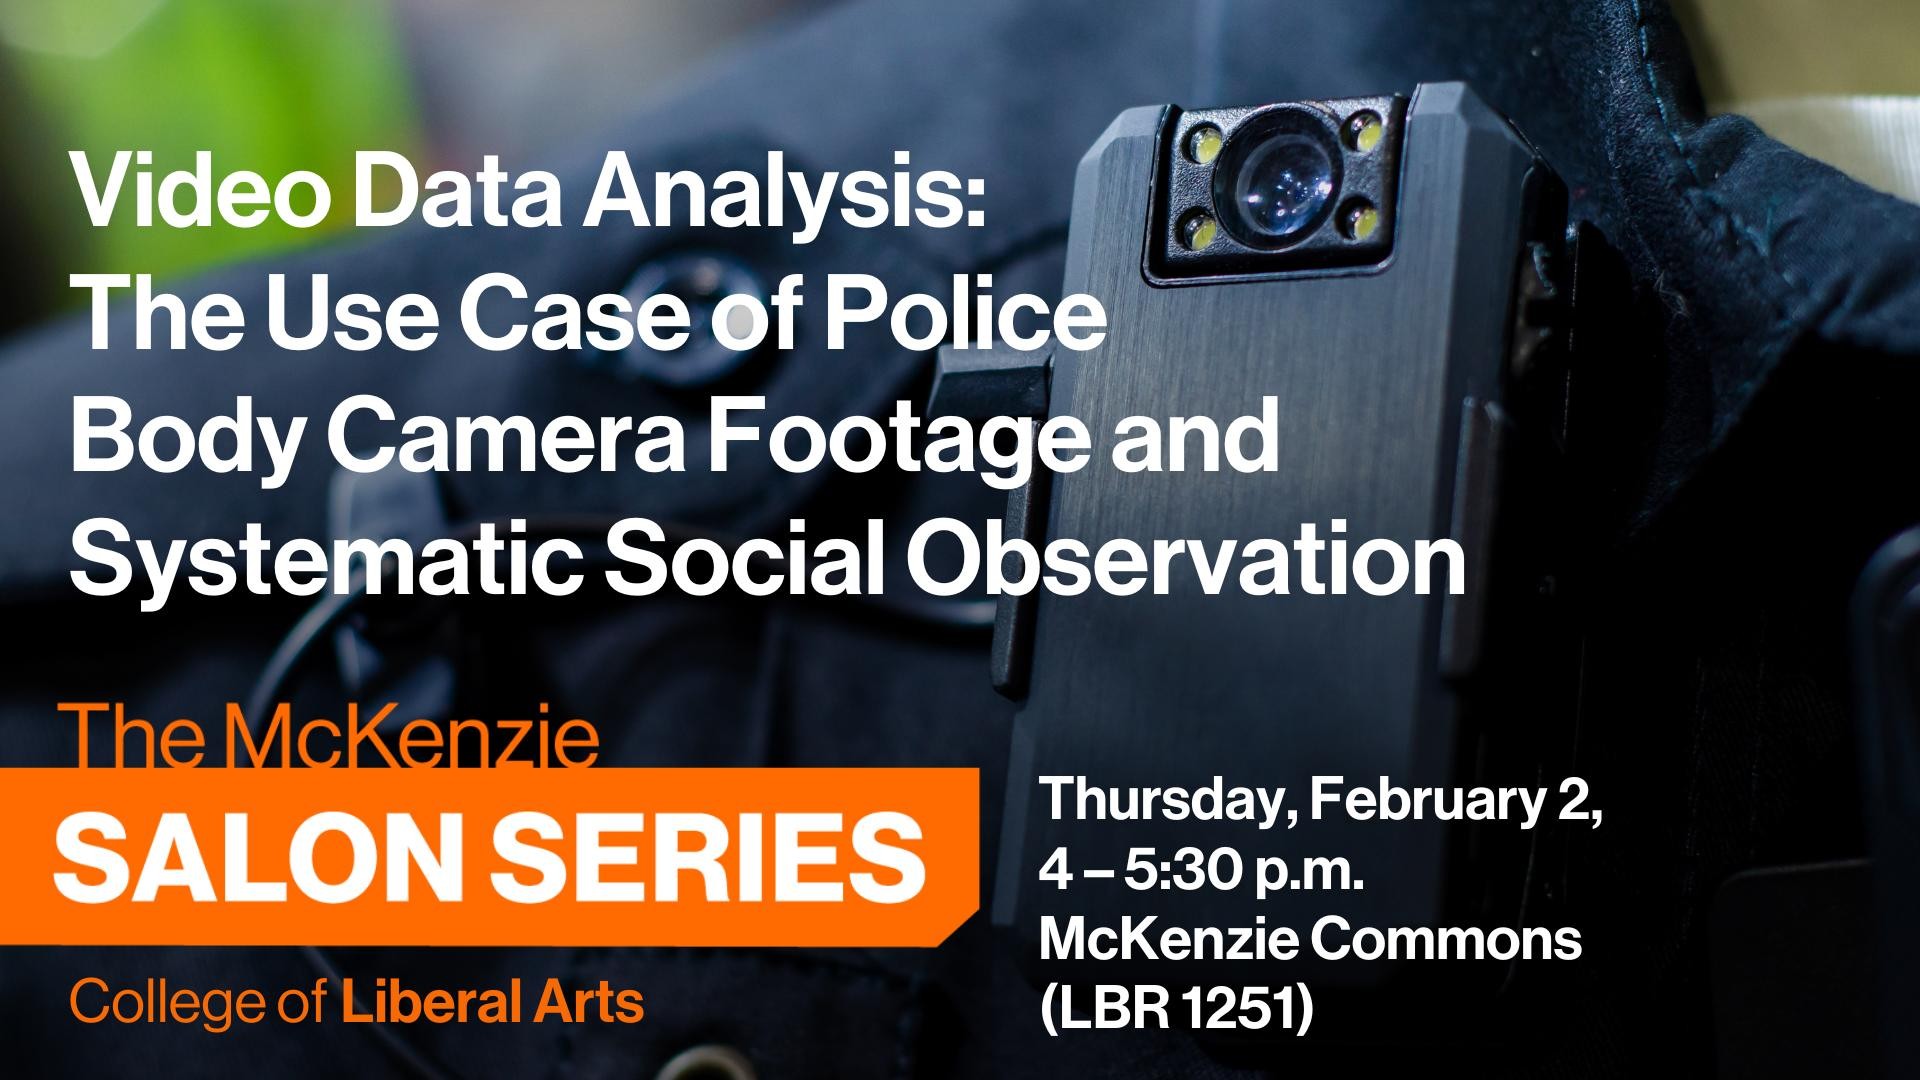 McKenzie Salon: Video Data Analysis February 2 4-5:30 p.m. 